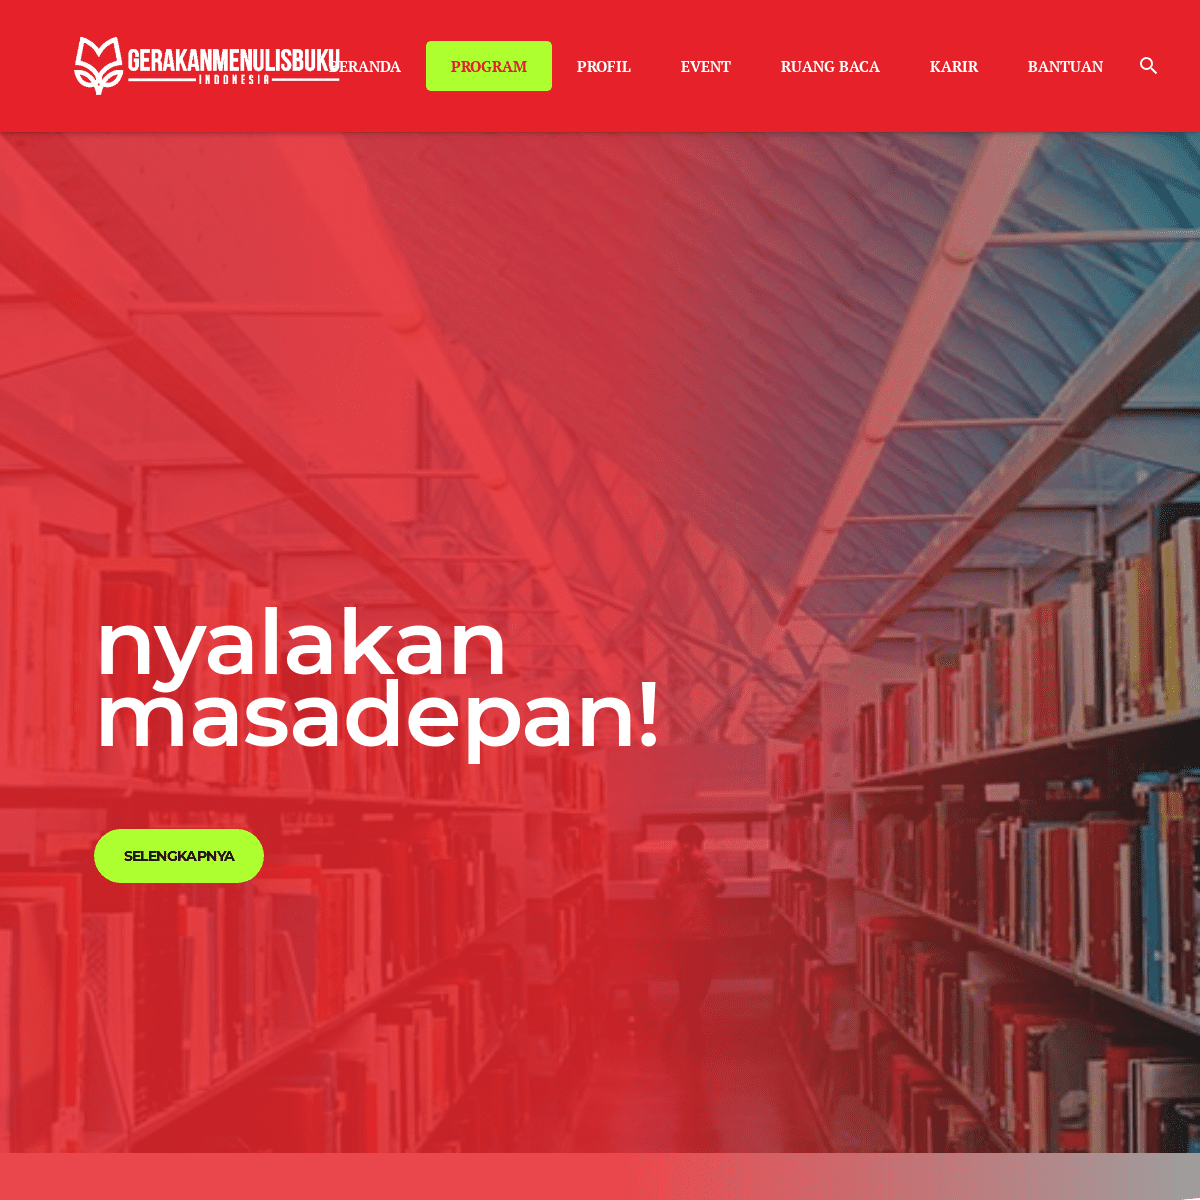 BERANDA | Gerakan Menulis Buku Indonesia